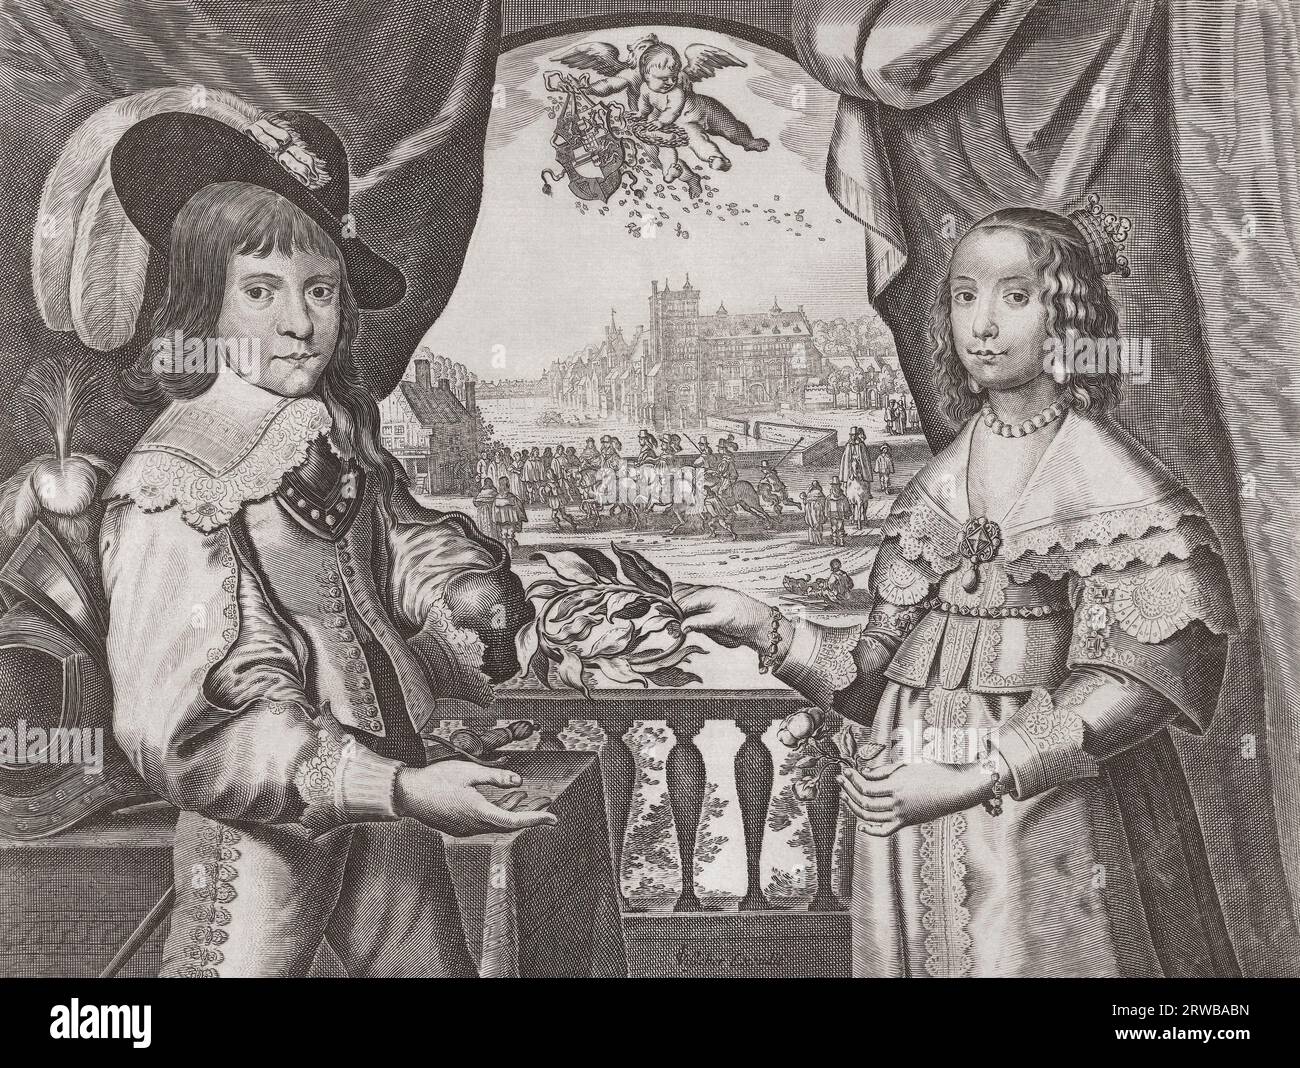 Guillaume II, prince d'Orange, et son épouse, Marie Stuart, la fille aînée du roi Charles Ier d'Angleterre. Au moment de leur mariage William avait 14 ans et Marie 9 ans. D'après une estampe d'un artiste inconnu. Banque D'Images